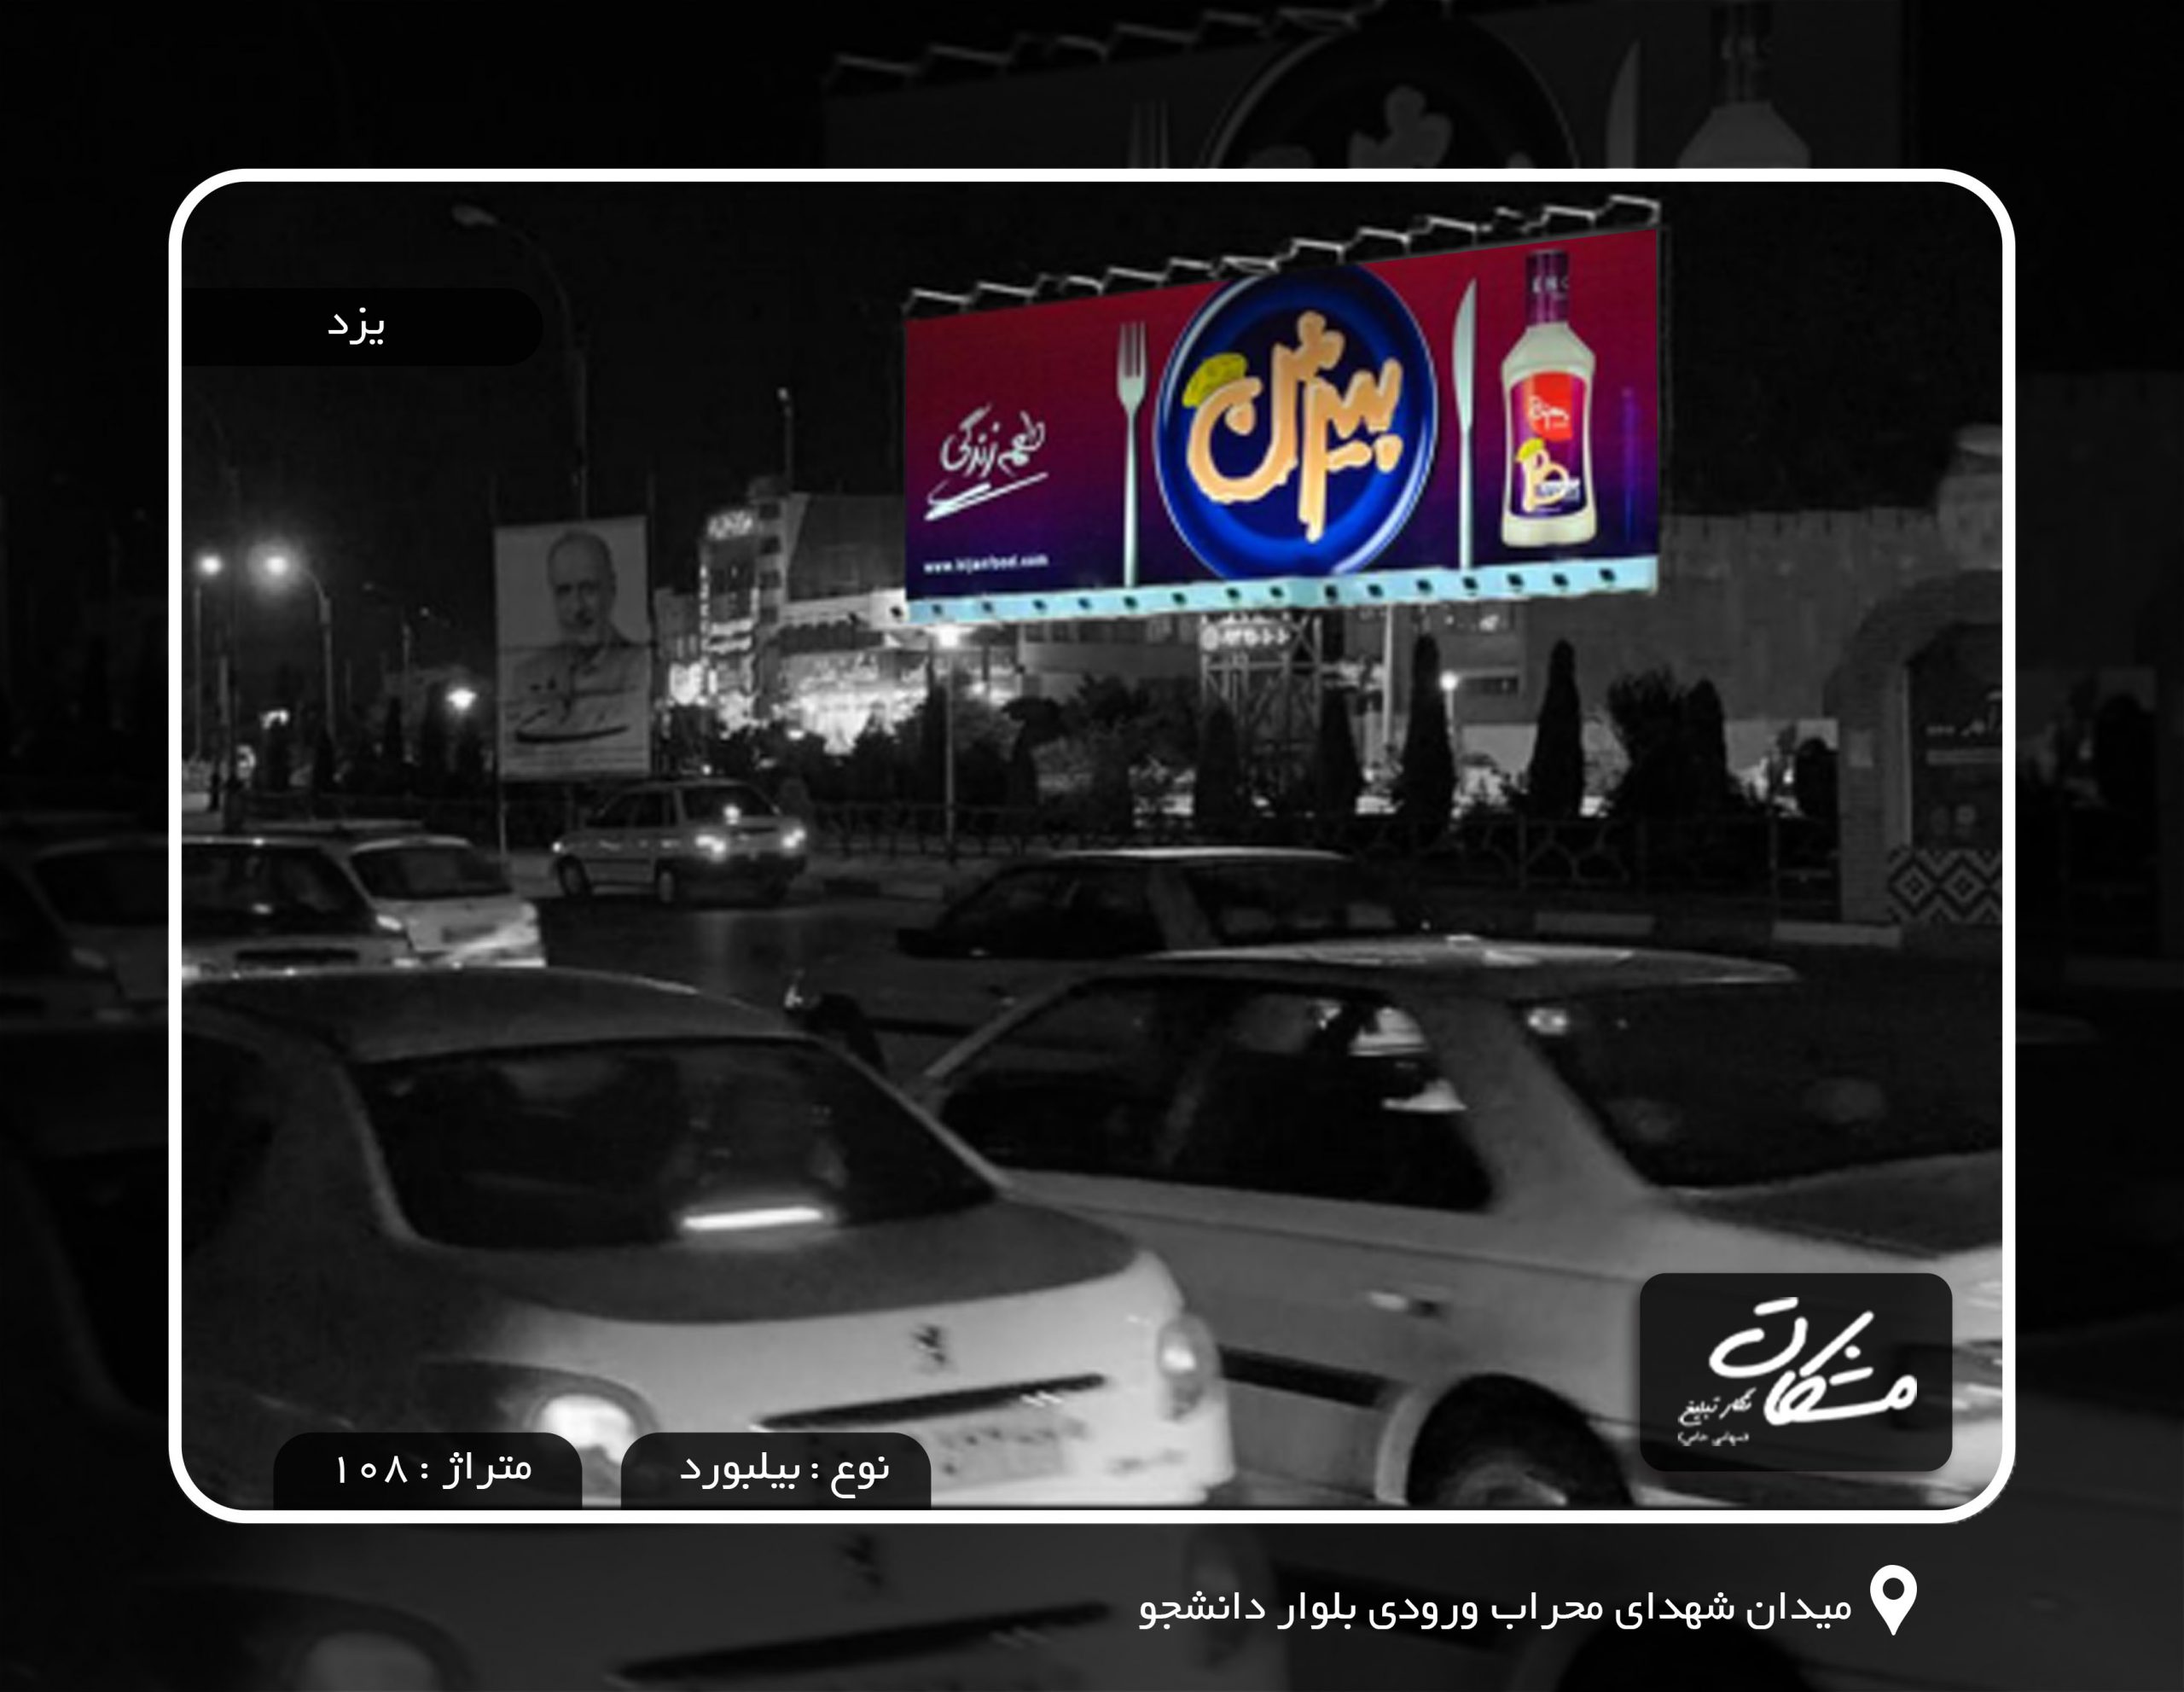 یزد میدان شهدای اجاره بیلبورد در یزد محراب ورودی بلوار دانشجو